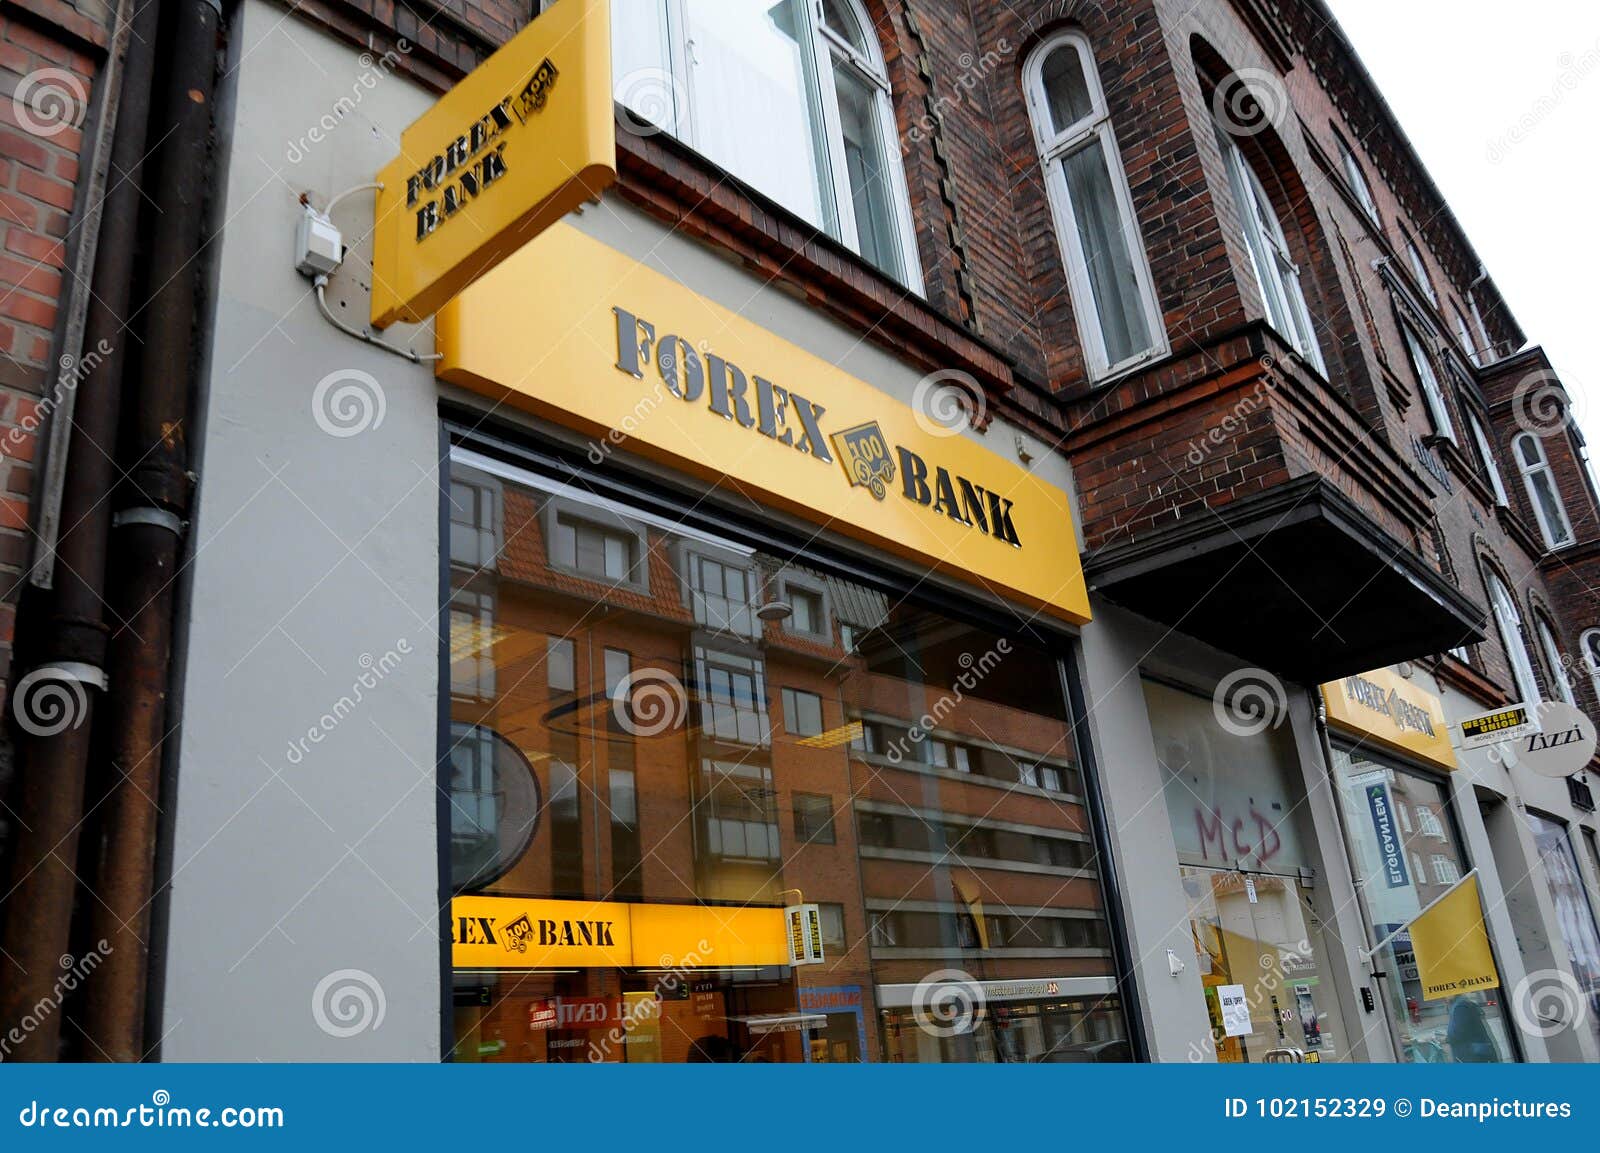 Forex bank denmark